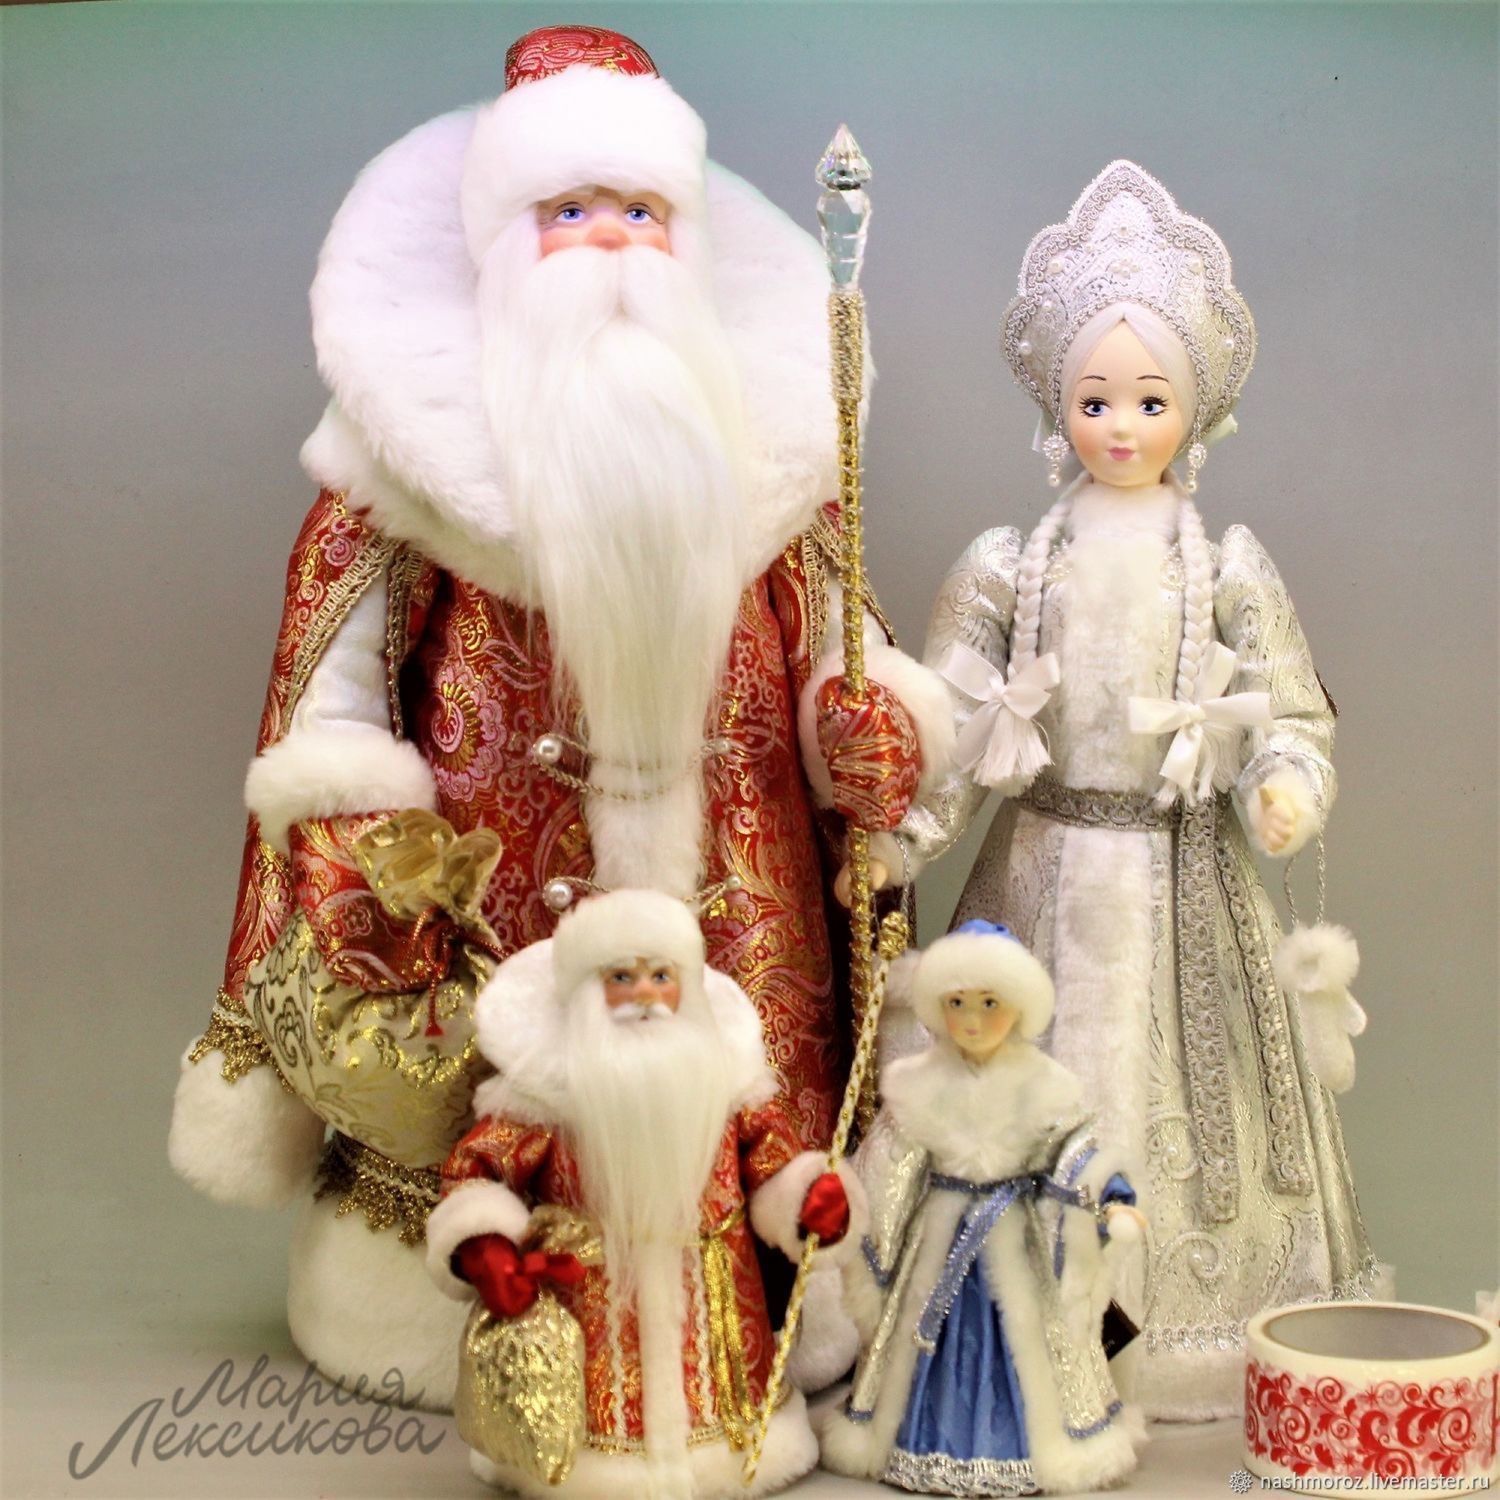 Рукодельная фигура Деда Мороза и Снегурочки под елку - это настоящий символ праздника, который перенесет вас в атмосферу детства и заветных желаний.